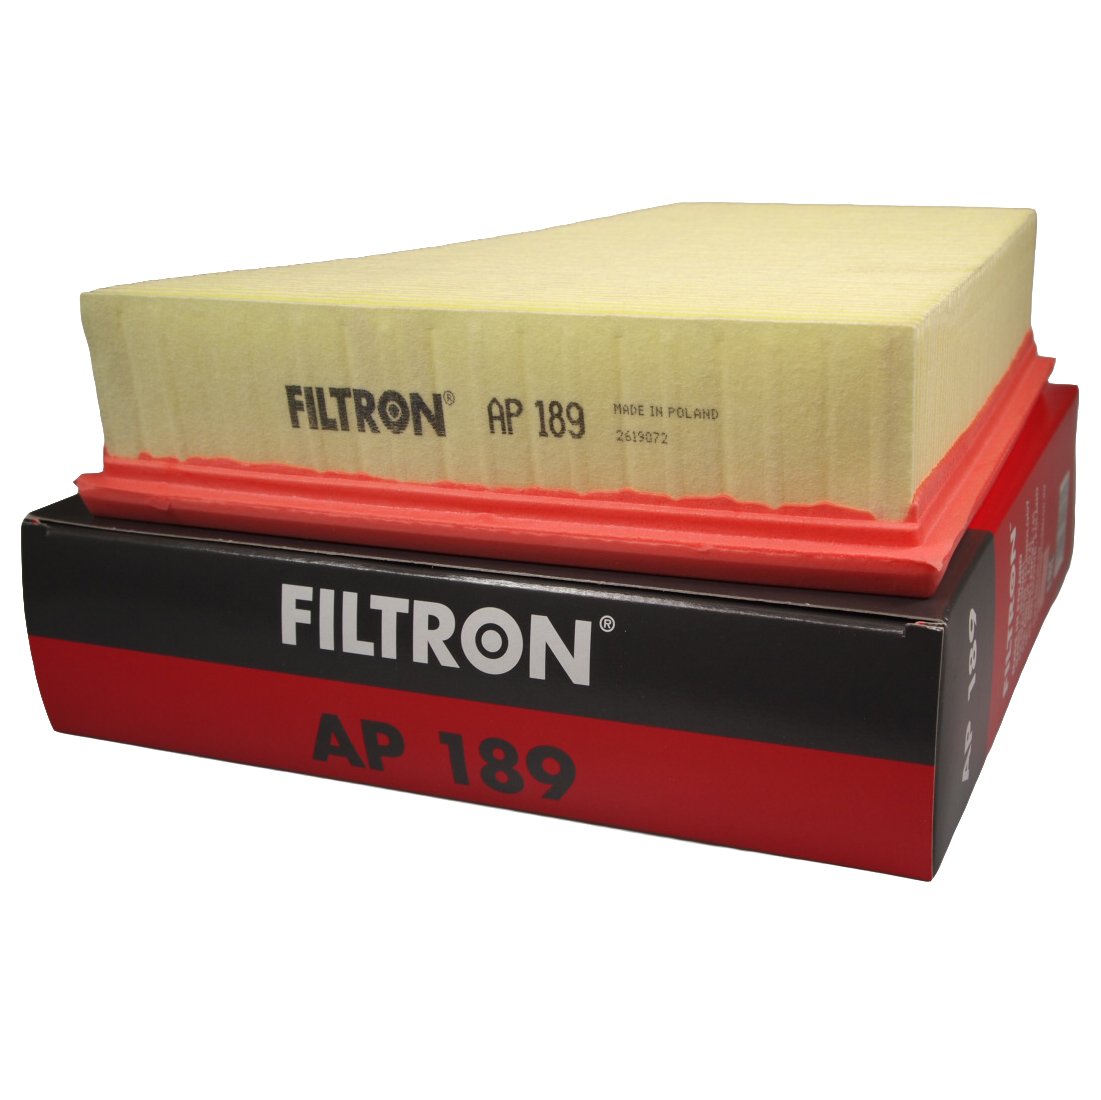 Ap фильтр воздушный. Ap1856 FILTRON фильтр воздушный. Фильтр воздушный FILTRON ap006. FILTRON ap185/6. FILTRON ap064 фильтр воздушный.